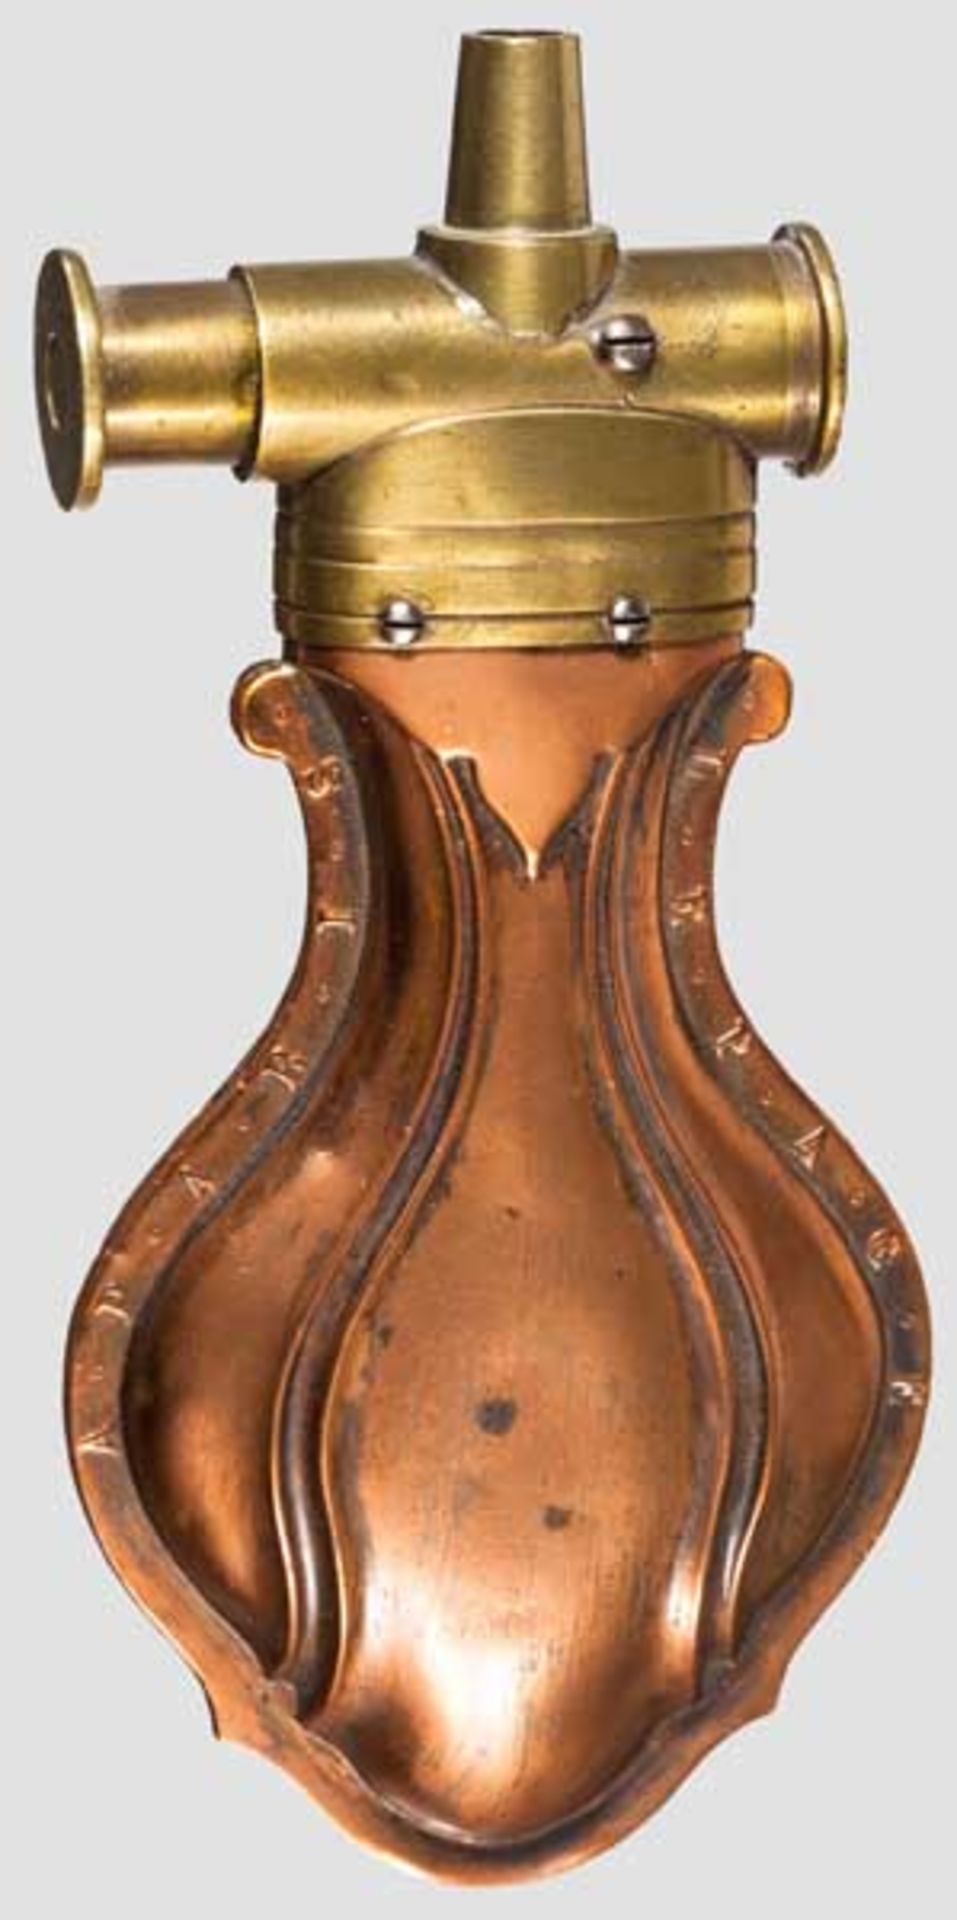 Zündkrautflasche LePage, Paris um 1850 Fein geprägter Kupferkorpus, vs. und rs. jeweils seitlich